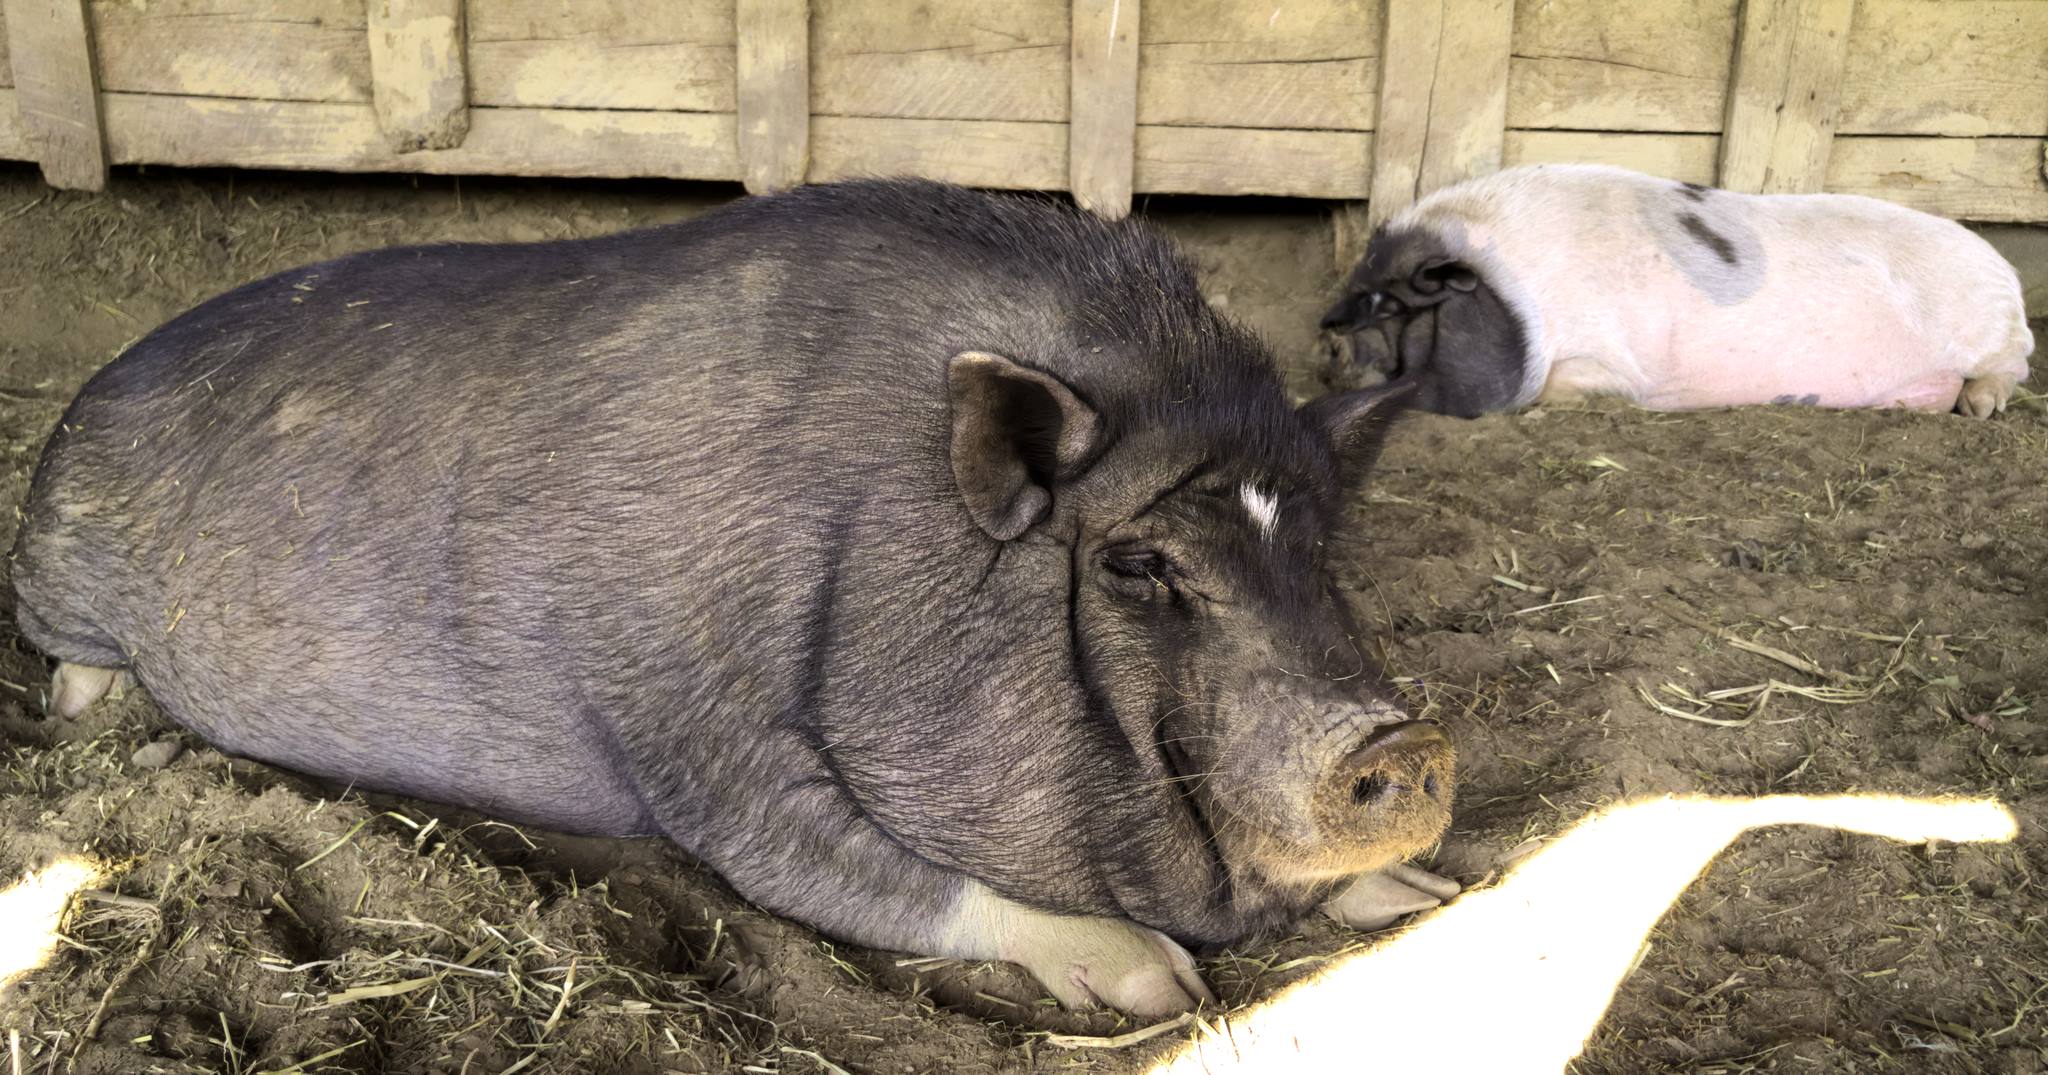 pig pigs smiling nap napping